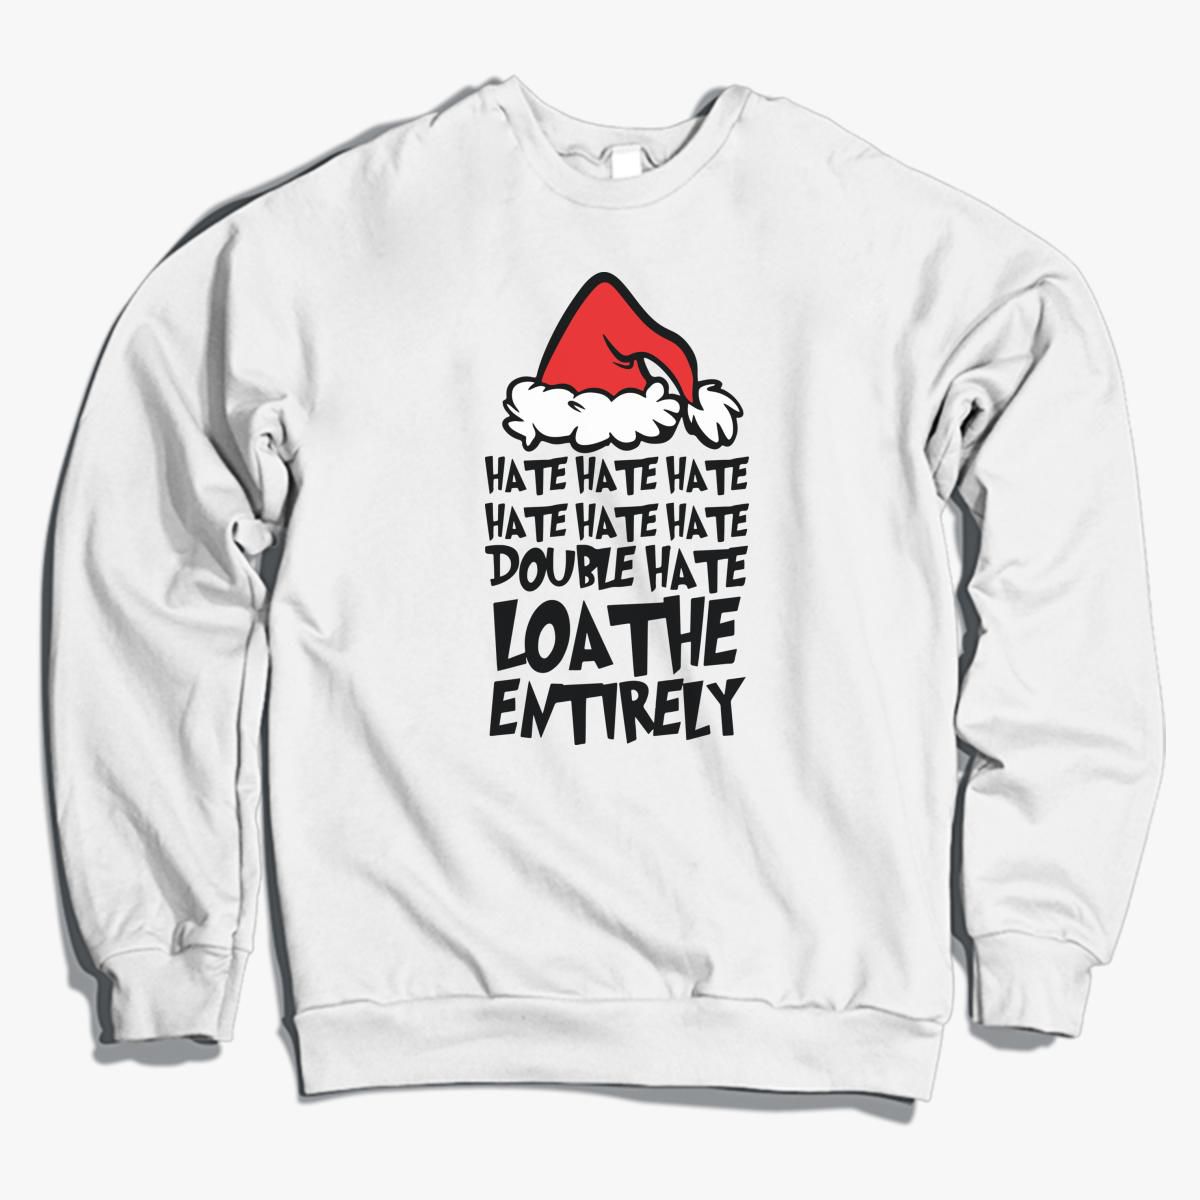 Hate Hate Hate Double Hate Loathe Entirely Crewneck Sweatshirt Customon